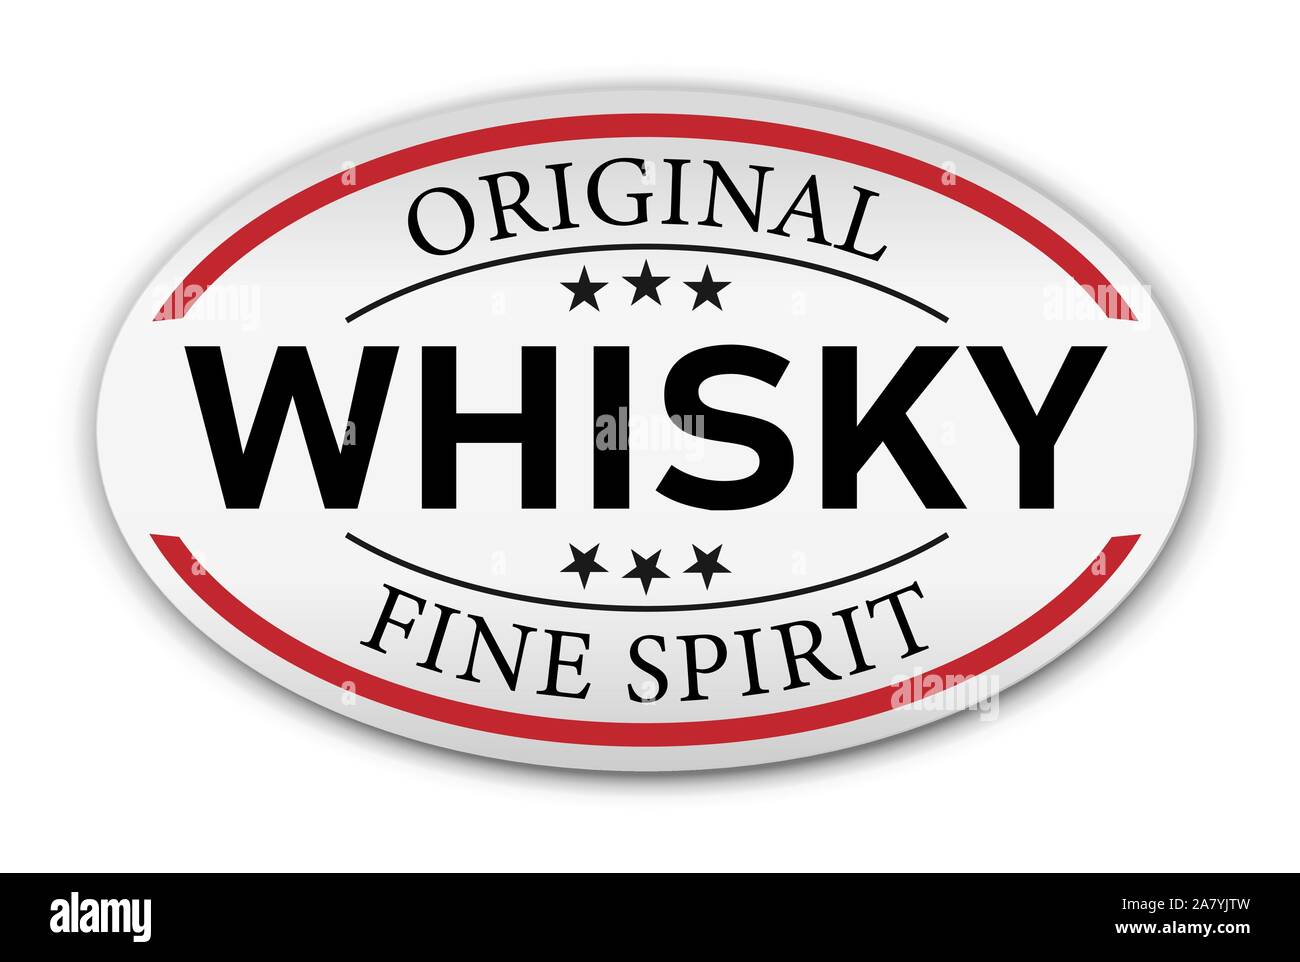 Original Whisky fine spirit button label banner icon Sticker Thai design, on white background vector Stock Vector